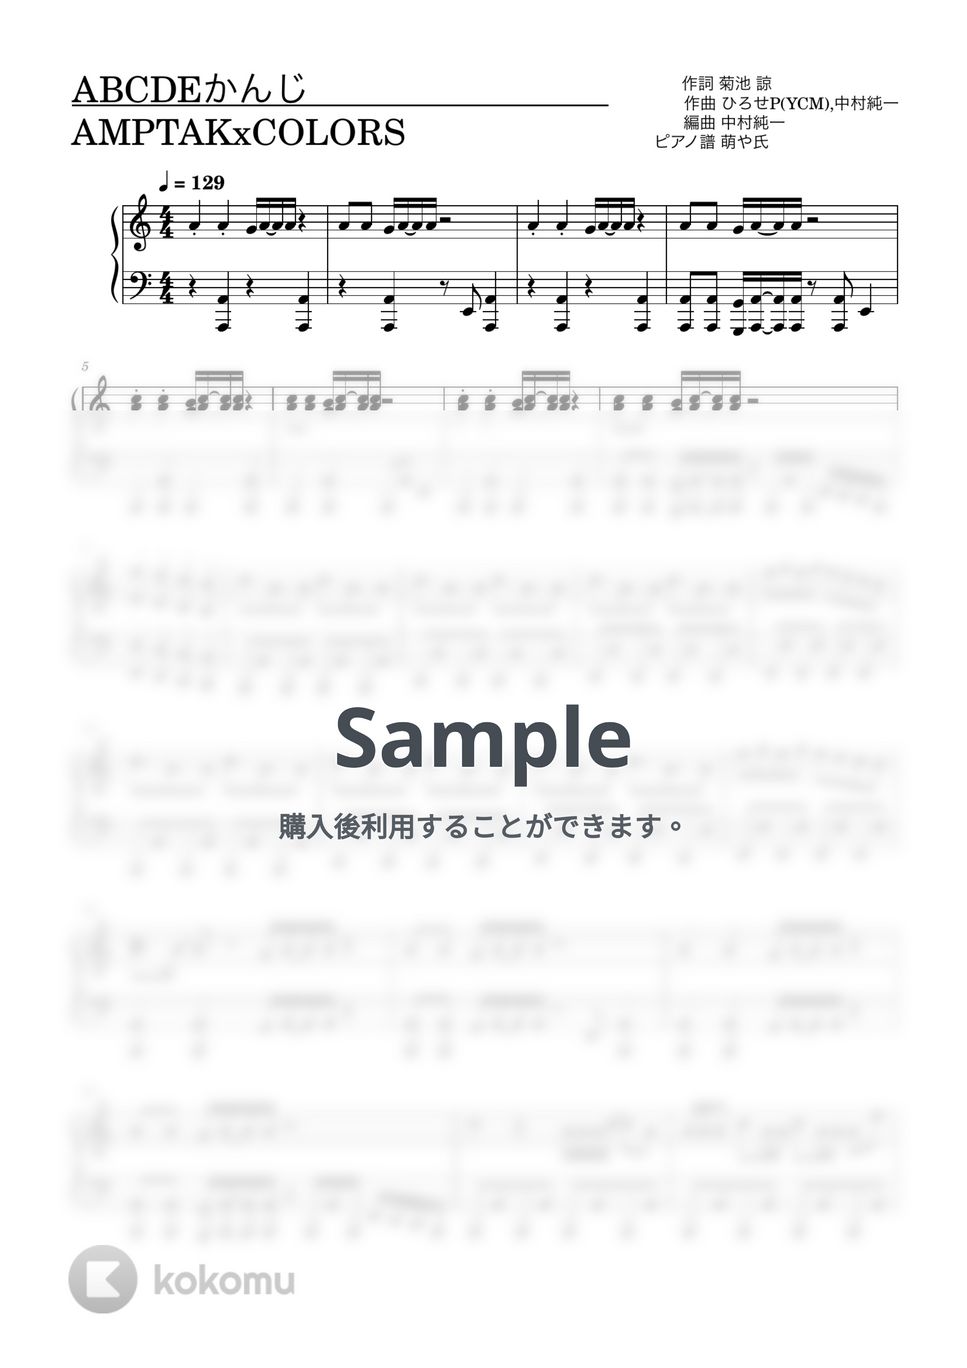 AMPTAK×COLORS - ABCDEかんじ (ピアノソロ譜) by 萌や氏